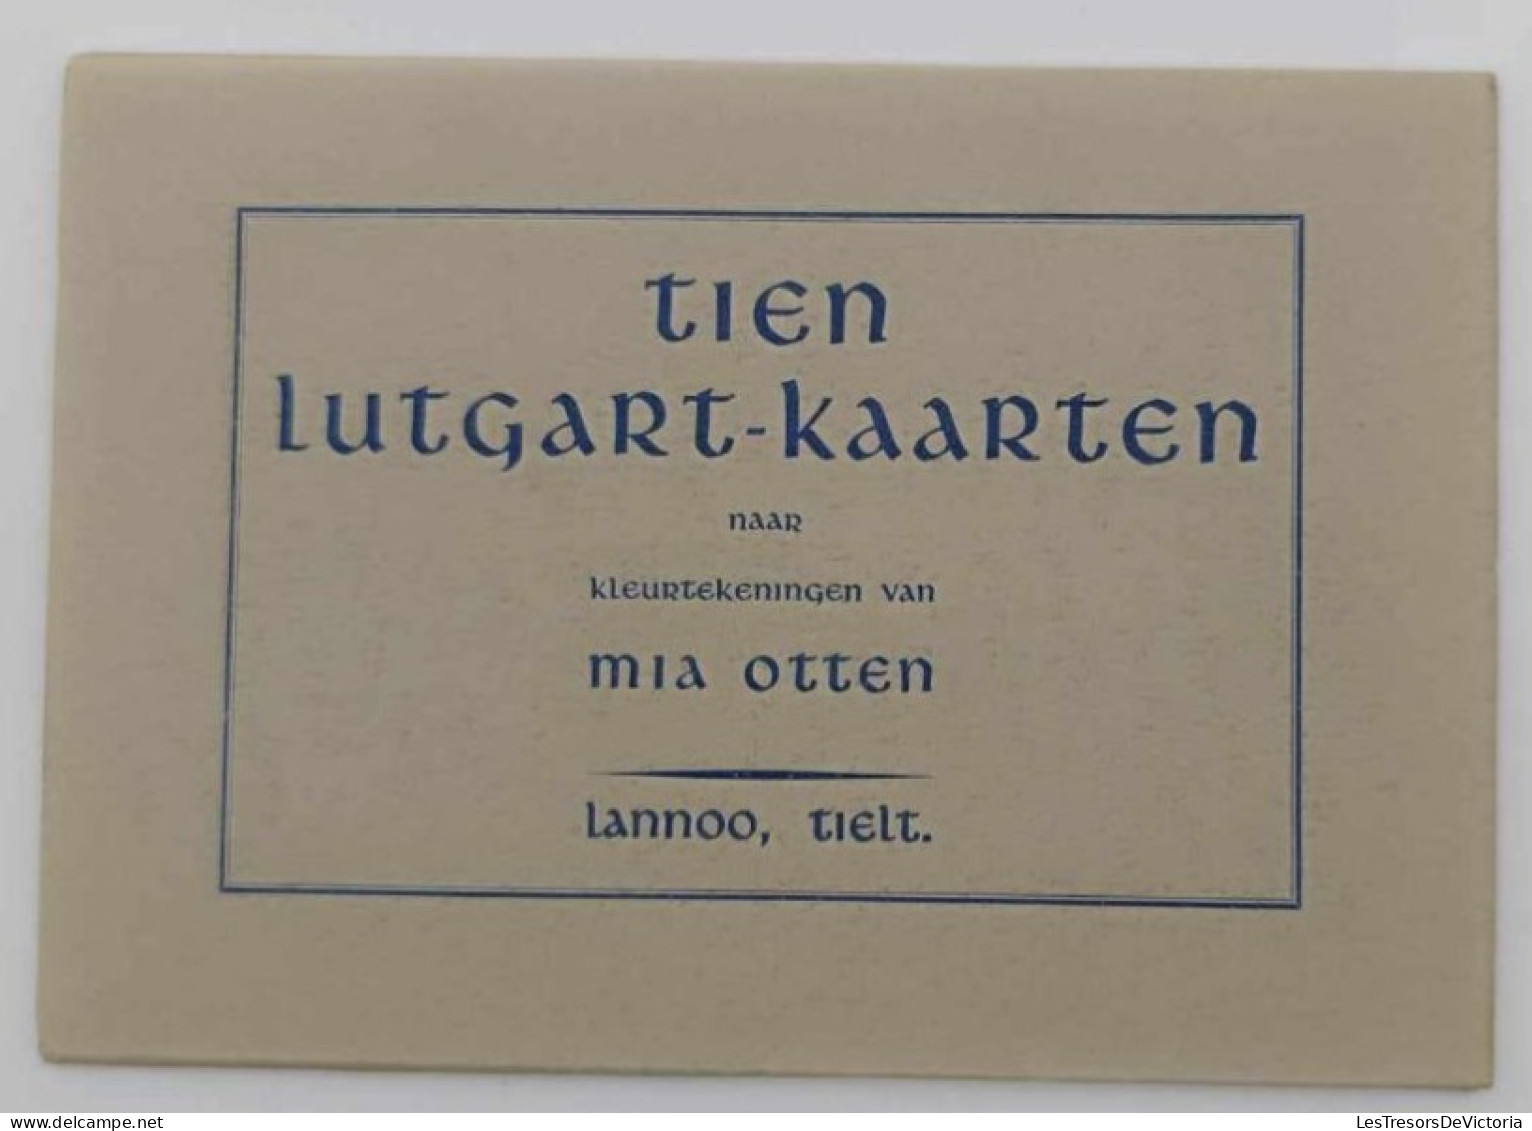 Carnets De Cartes Religieuses - Tien Lutgard Kaarten Naar Kleurtekenningen Van Mia Otten - Lannoo Tielt - Sammlungen & Sammellose